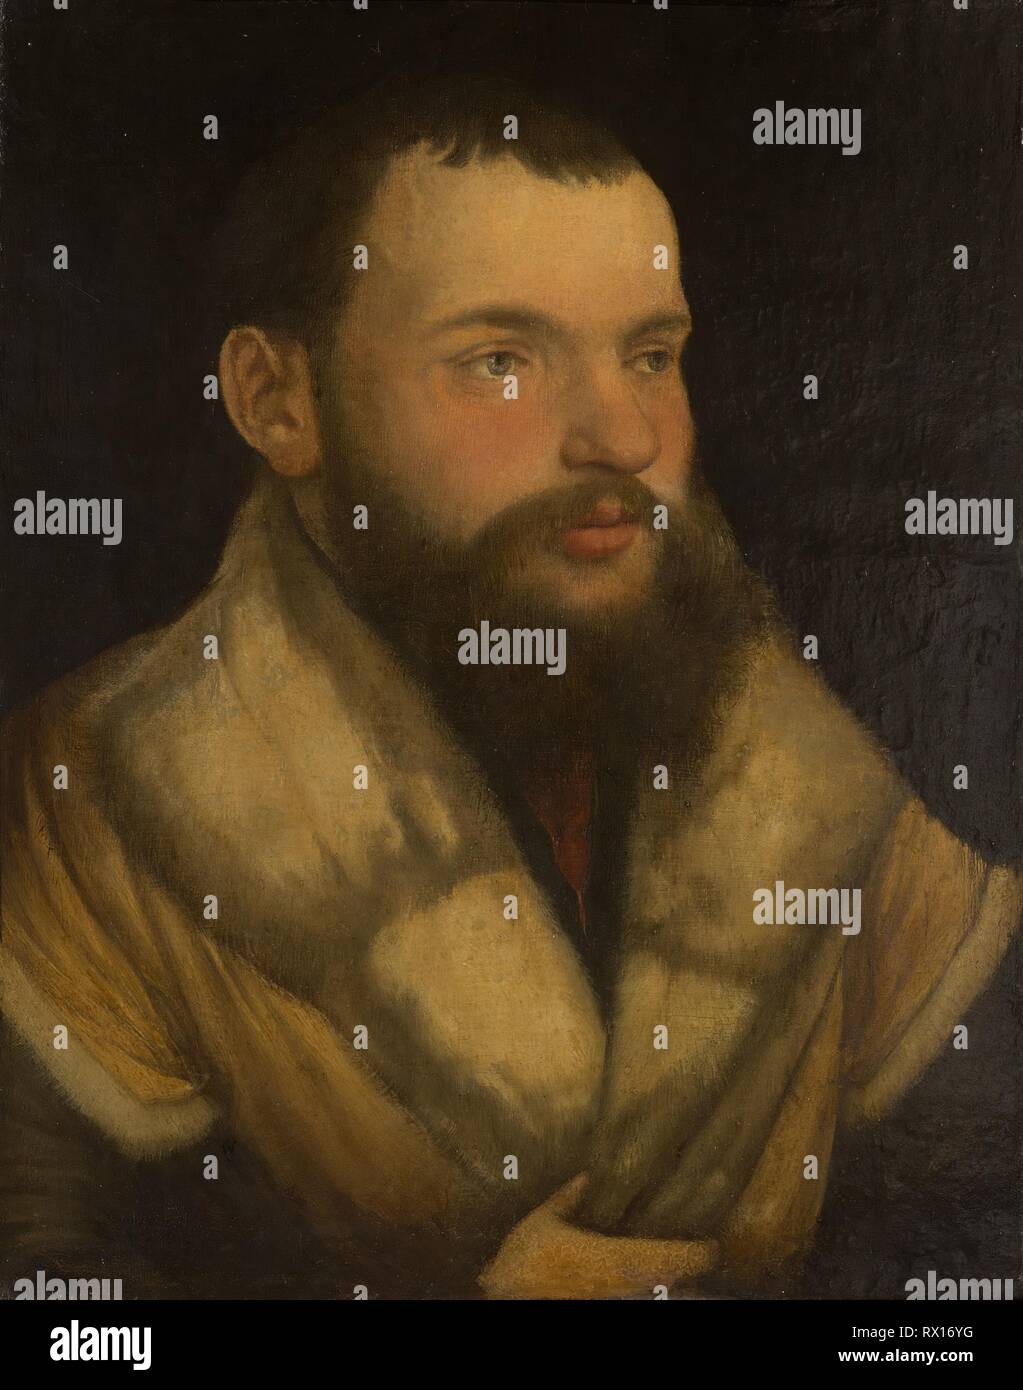 Ritratto di un uomo. Martin Schaffner, attribuito a; Tedesco, 1477/78 - 1546/49. Data: 1515-1535. Dimensioni: 13 x 10 3/8 in. (33 x 26,2 cm) superficie dipinta: 13 x 10 1/8 in. (33 x 25,7 cm). Olio su pergamena, montato sul pannello. Origine: Germania. Museo: Chicago Art Institute. Foto Stock